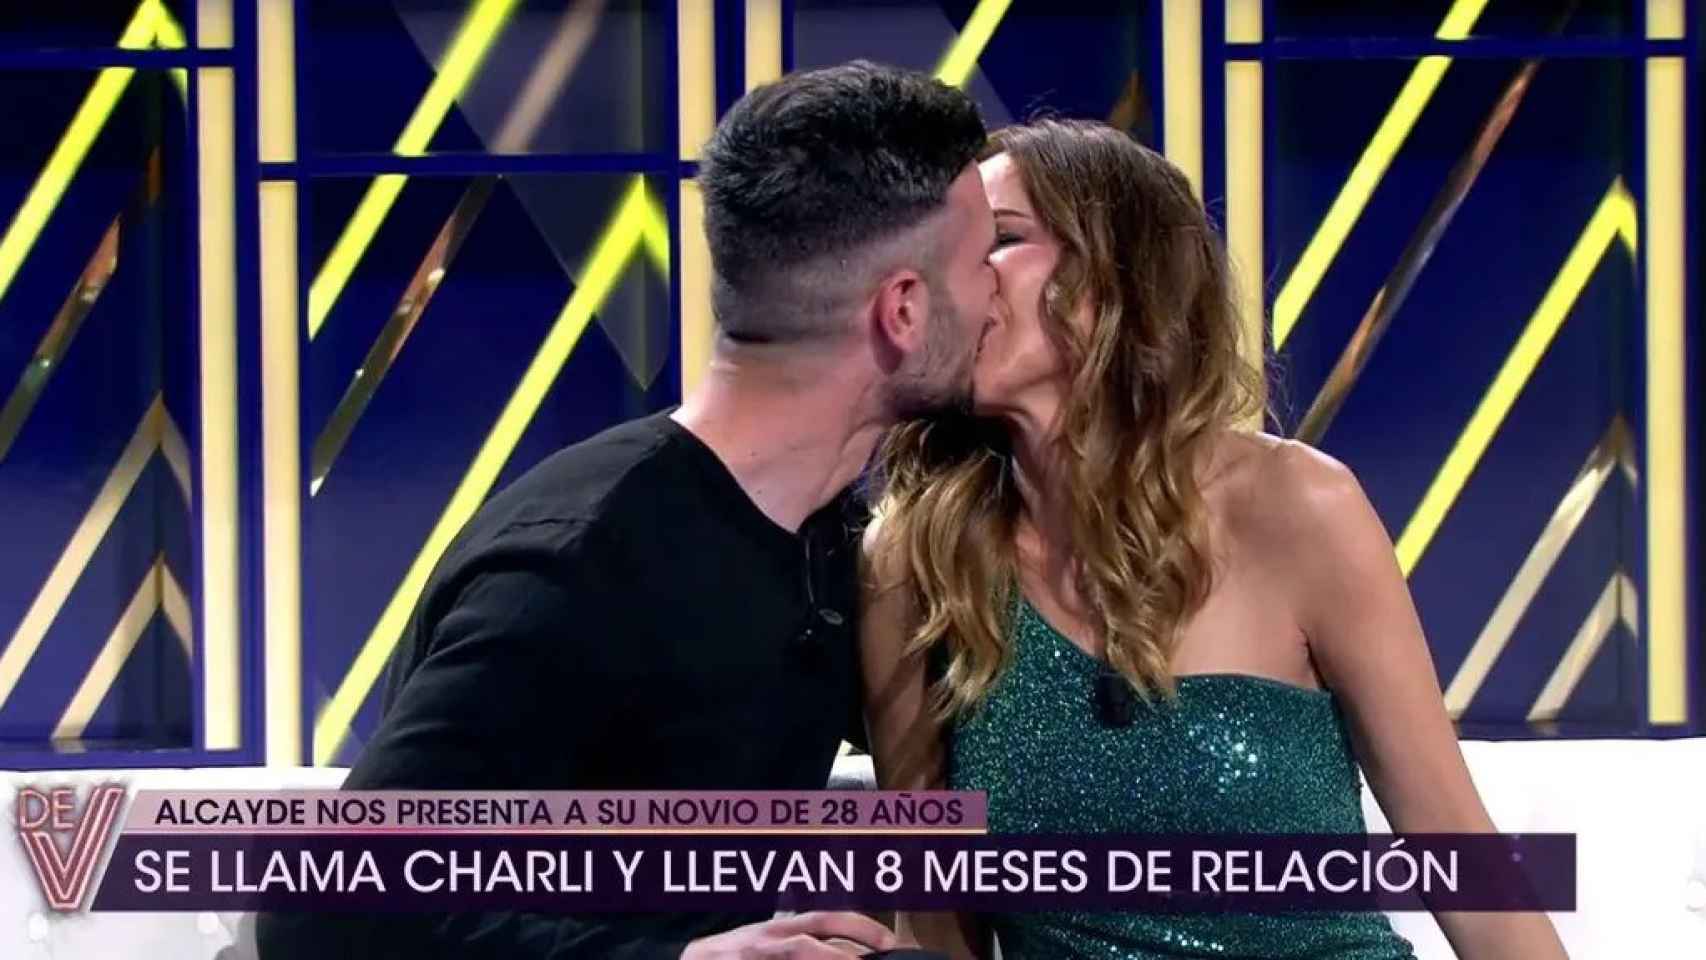 Carmen Alcayde besando a su novio, Charli, en 'De viernes'.